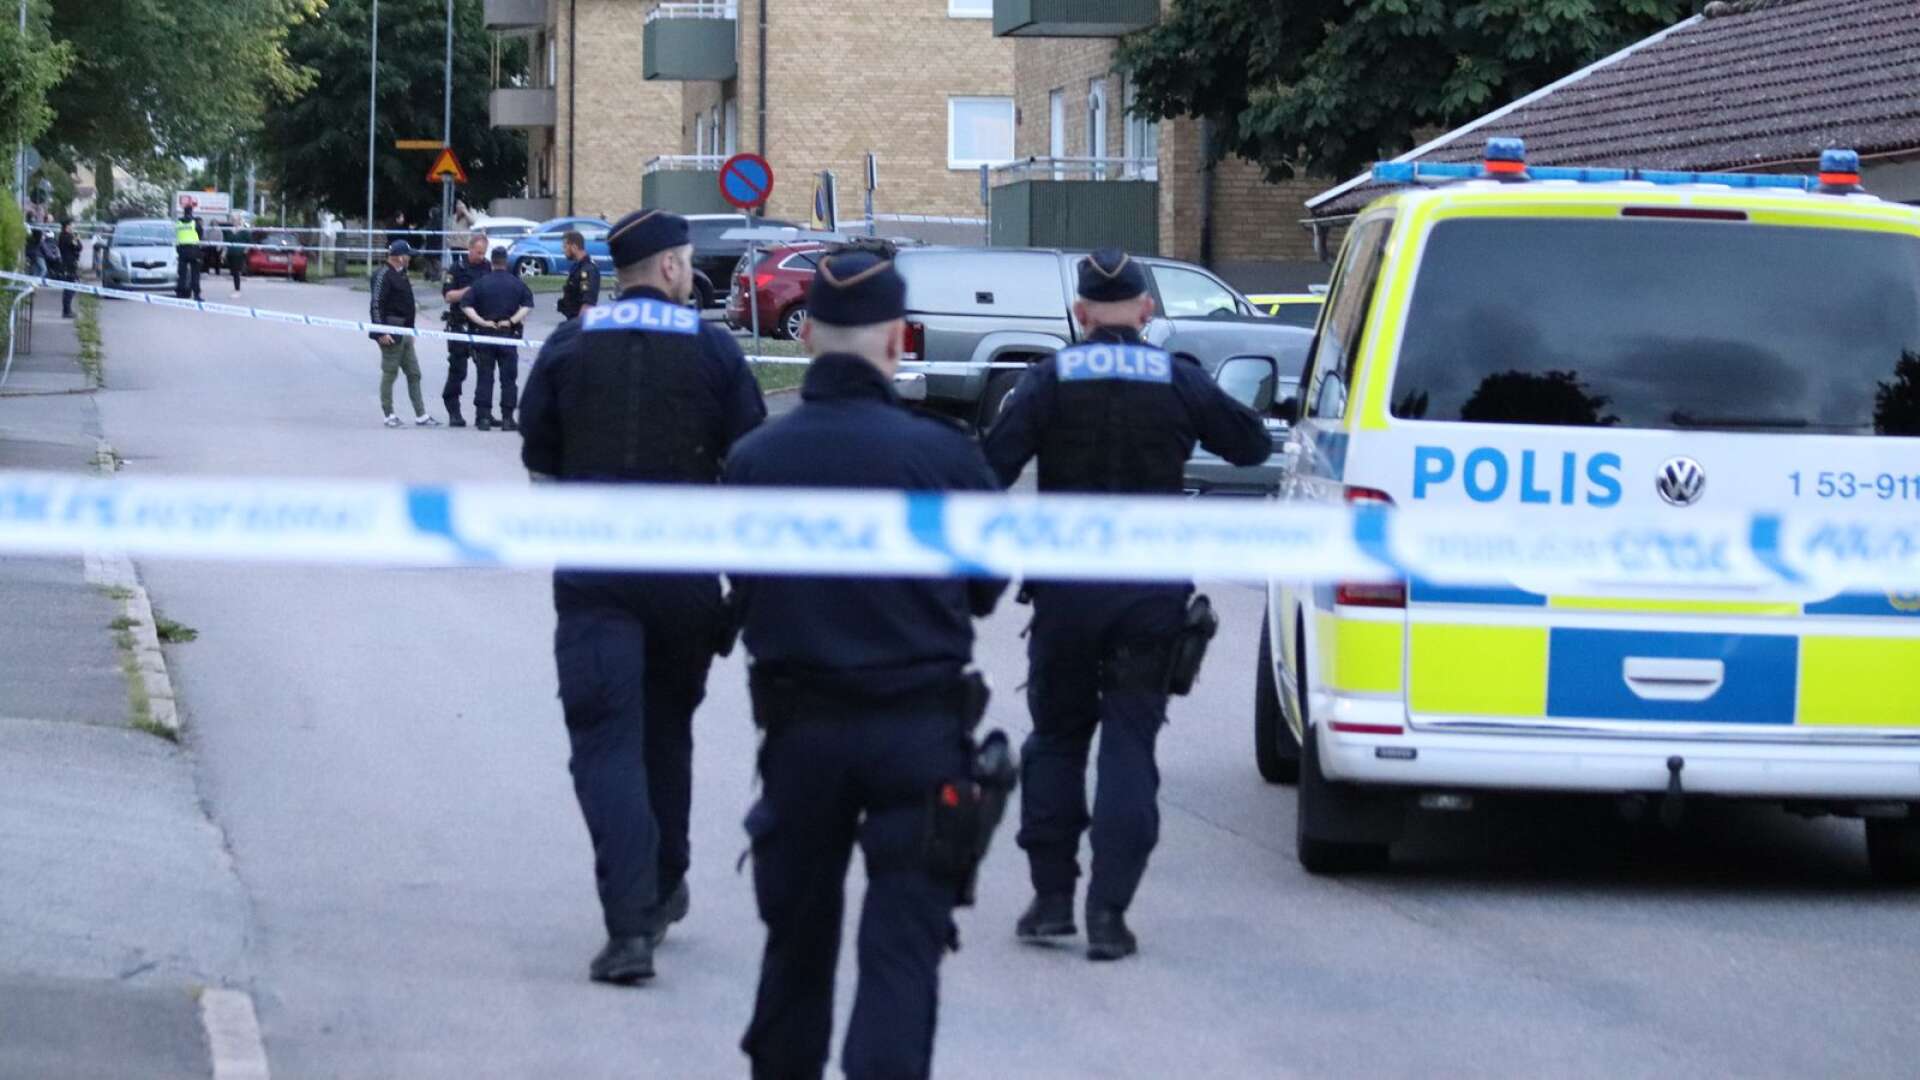 Vid lunchtid på torsdagen häktades mannen som misstänks för att ha mördat en kvinna i Falköping. Händelsen innebar ett stort polispådrag i Falköping under onsdagskvällen.